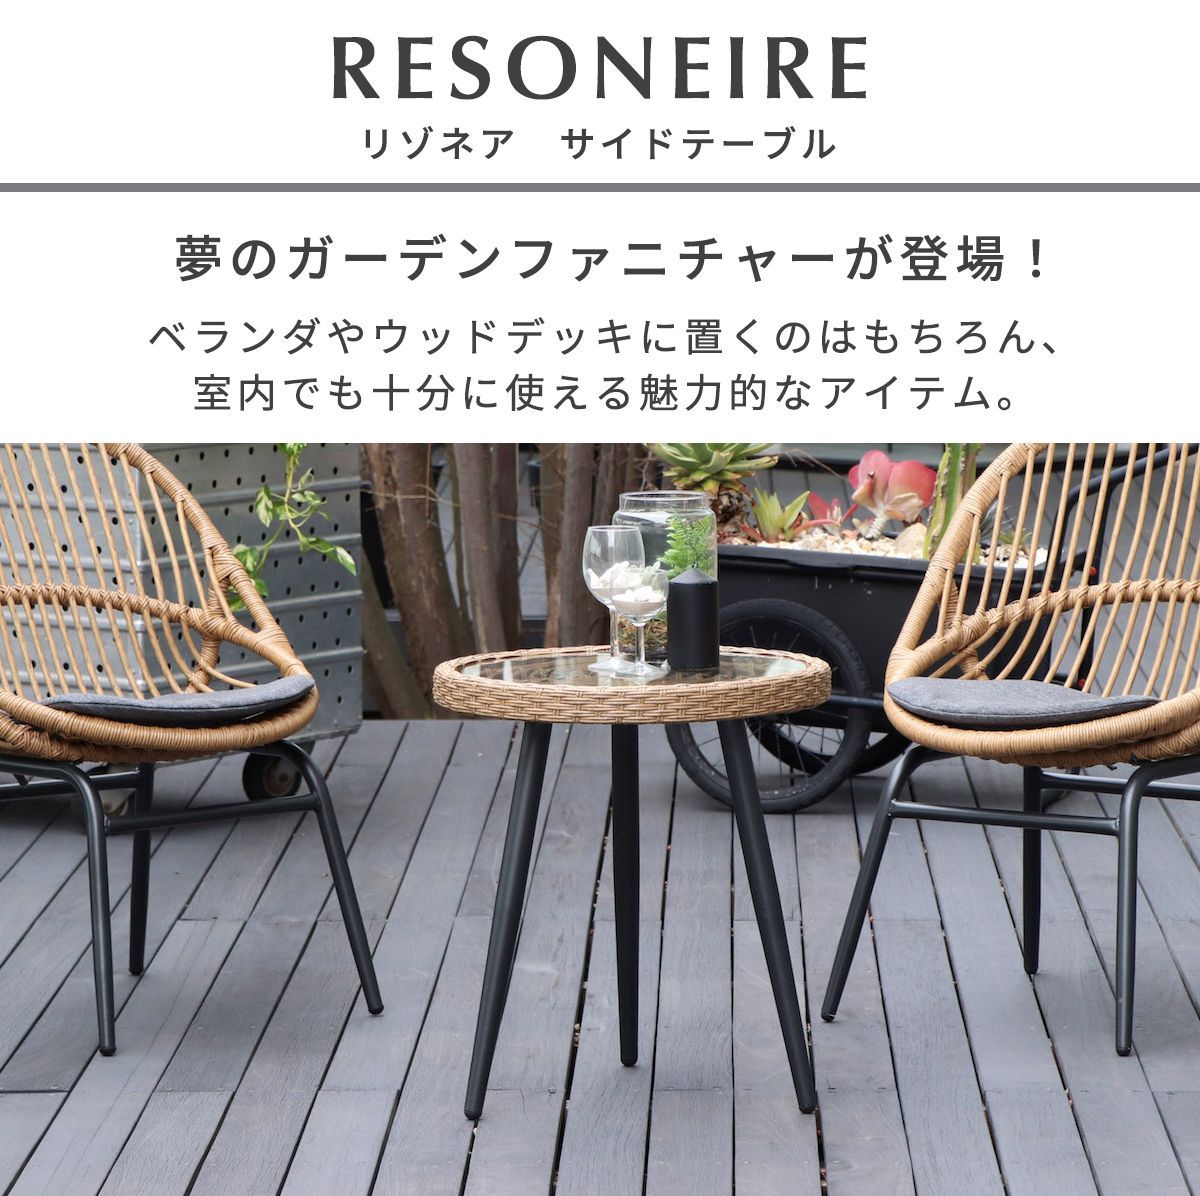 札幌元町 テラス テーブル 黒 ラタン風 アジアンテイスト サイド 